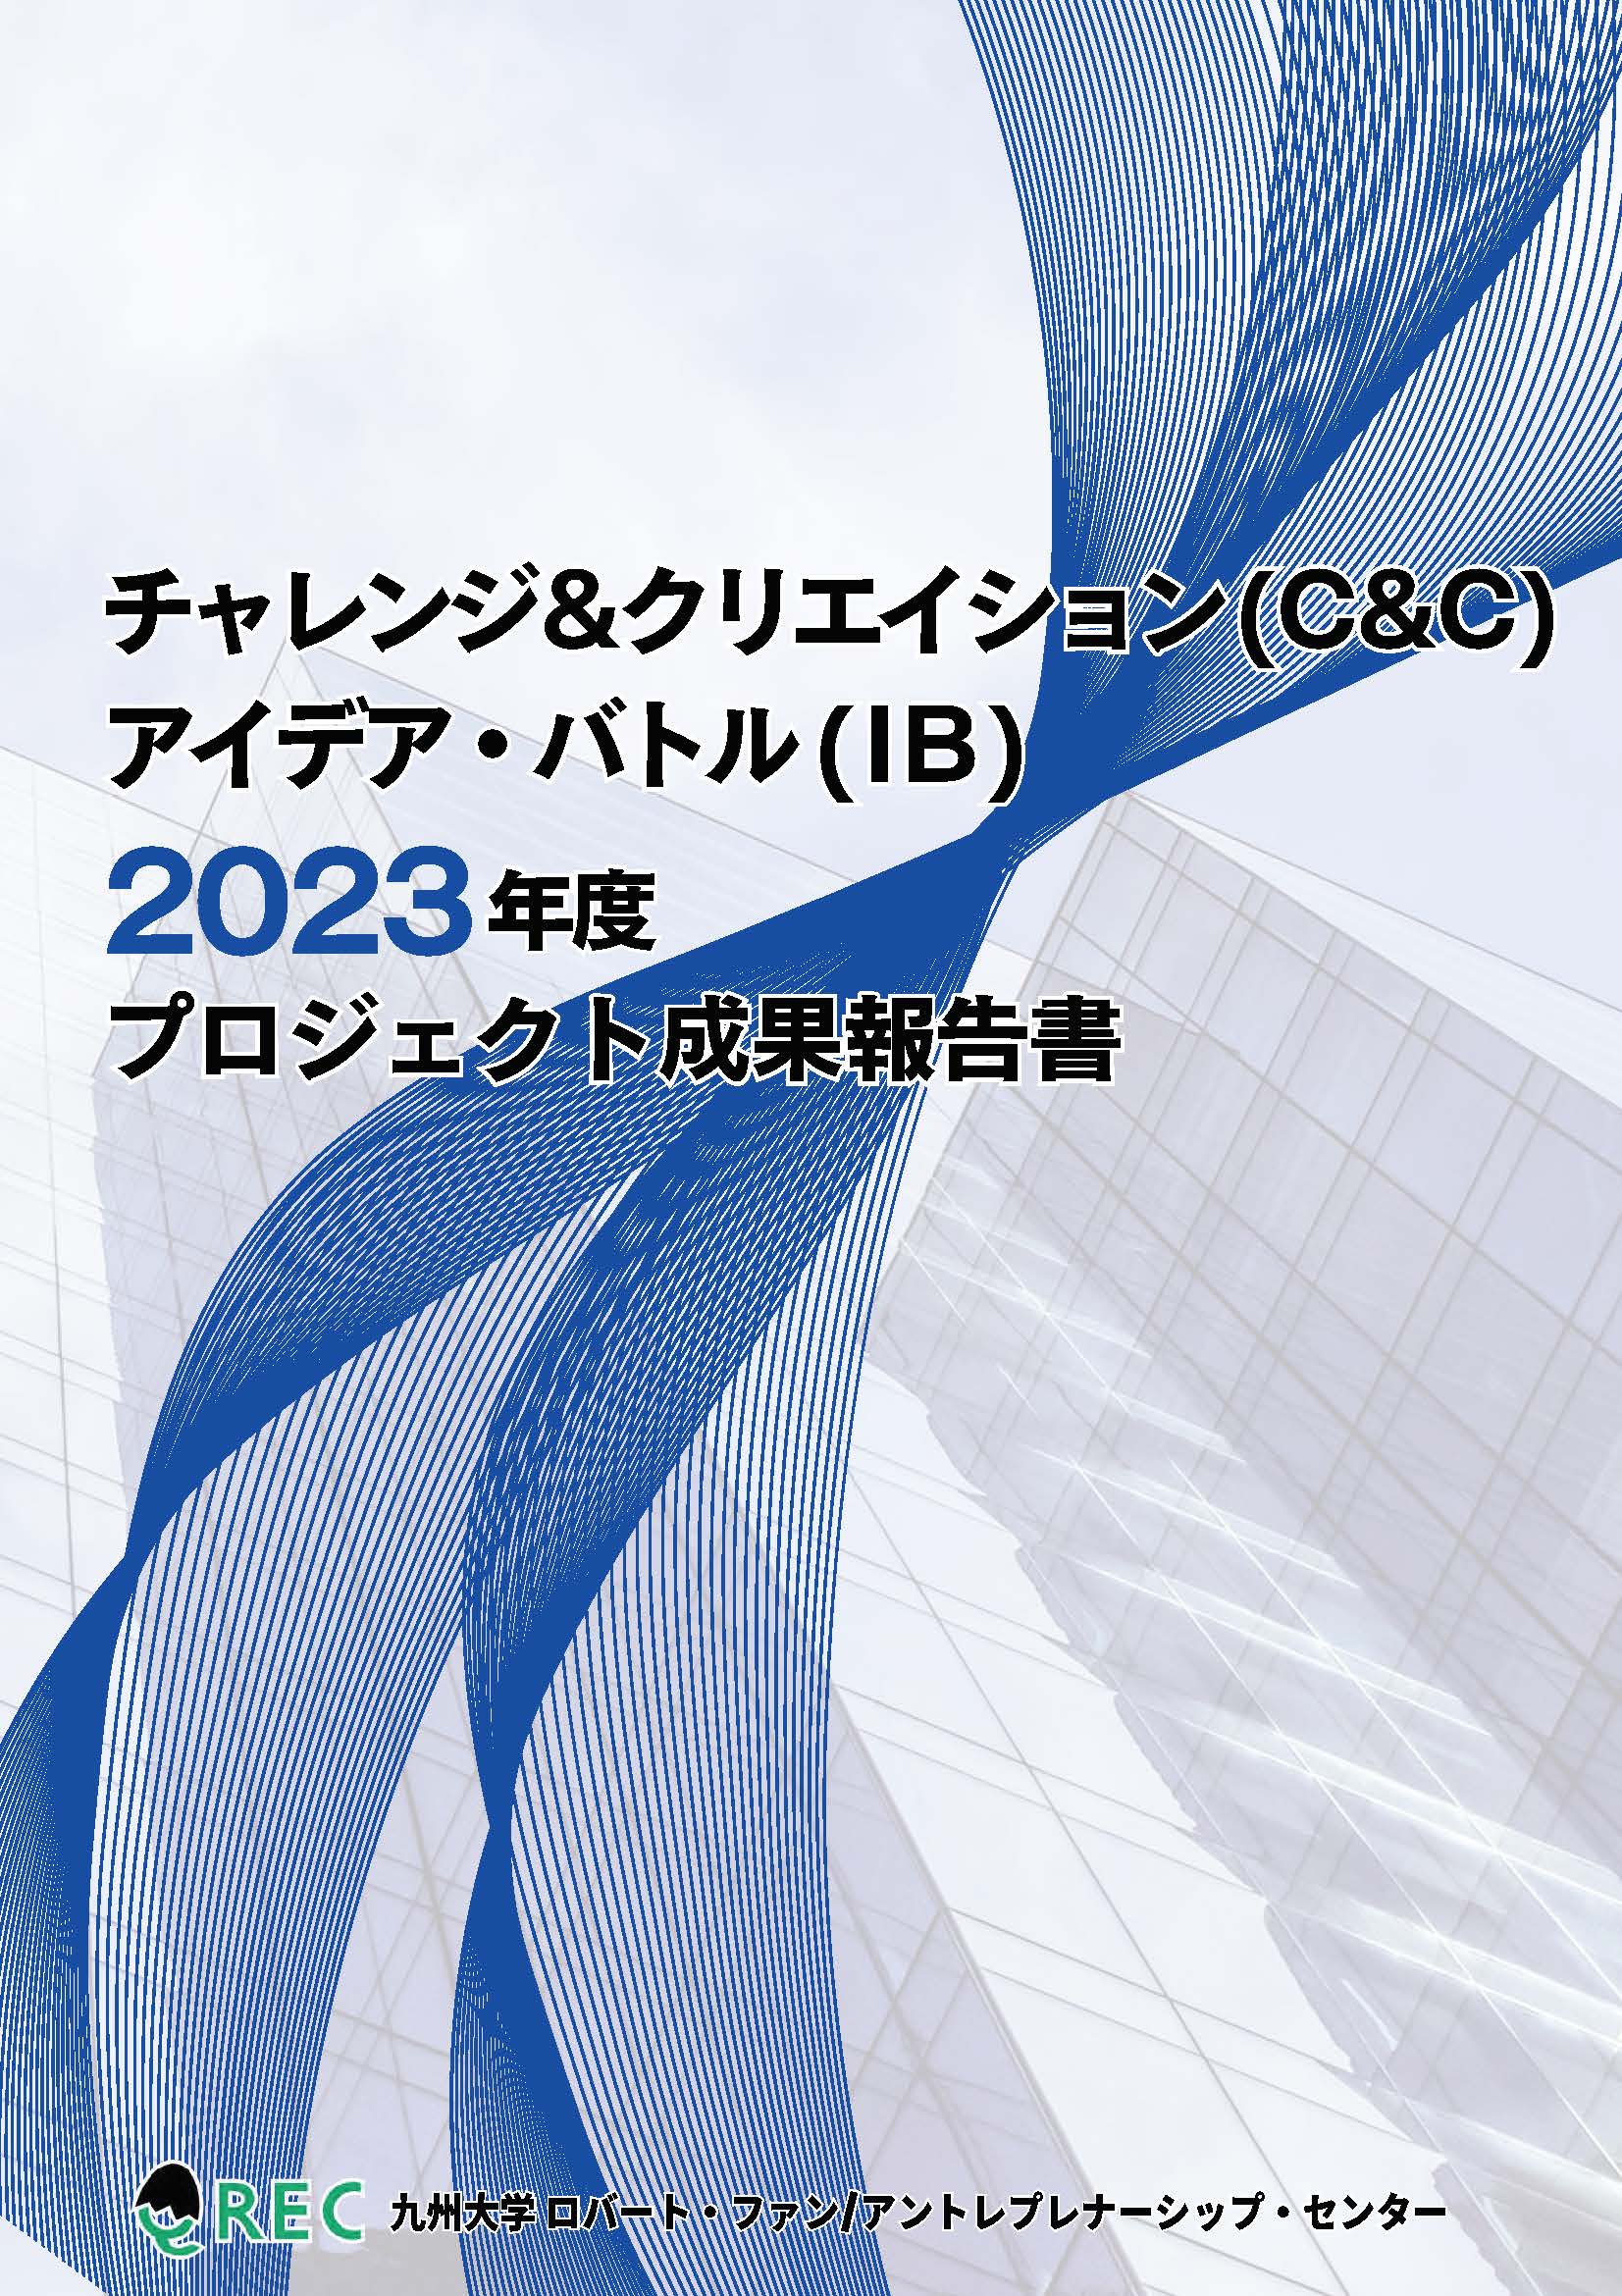 C&C / IB Outcome Report 2023